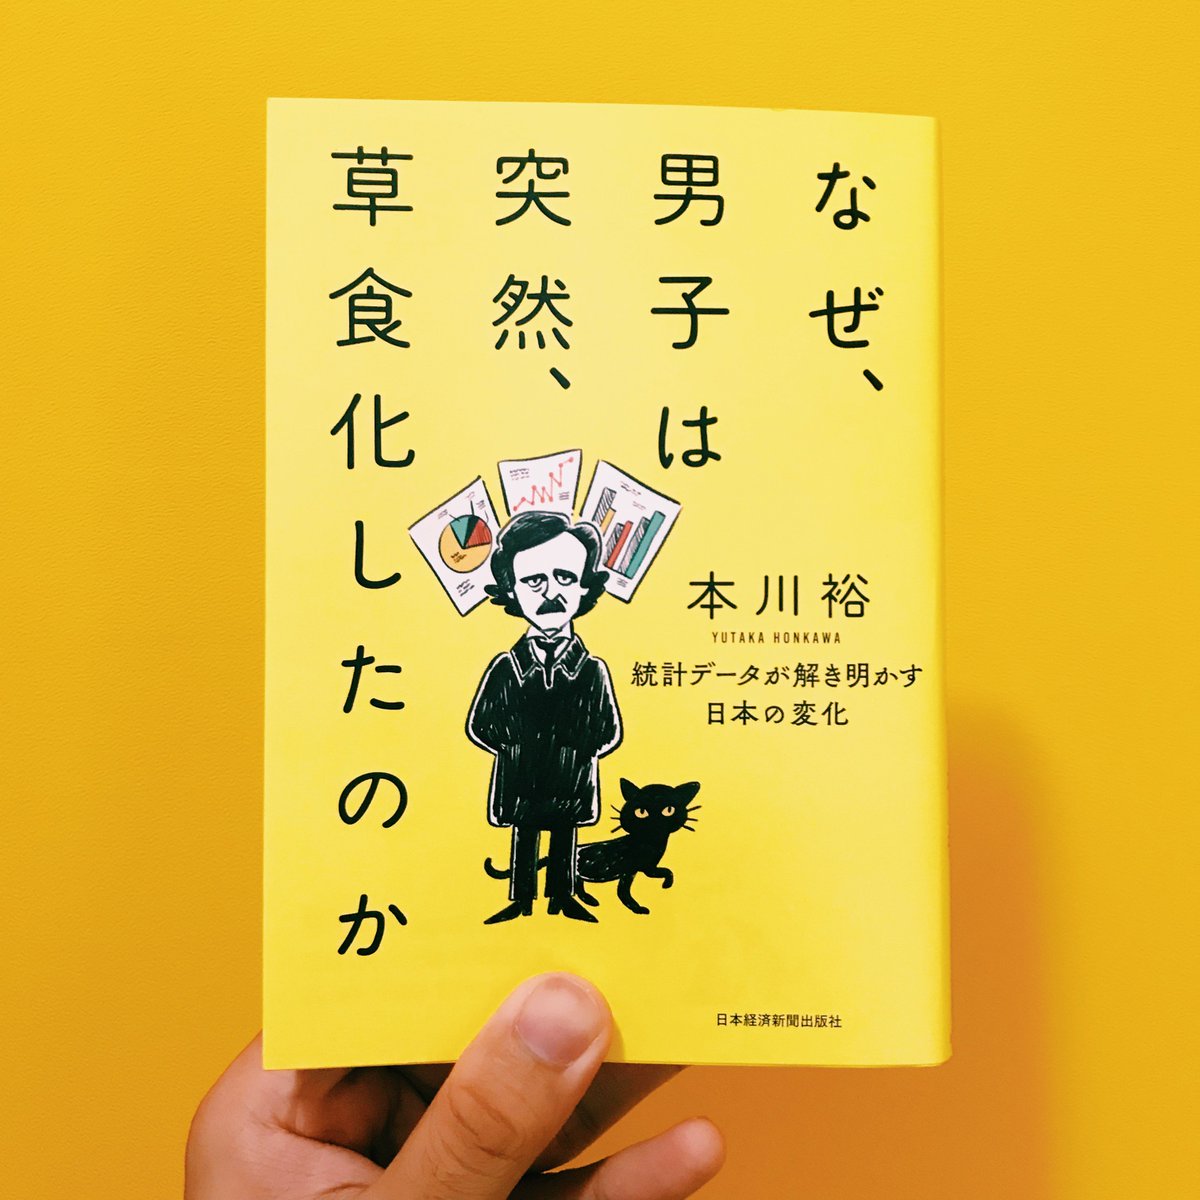 日本経済新聞出版社より、本川裕さんの「なぜ、男子は突然、草食化したのか」の装画と挿絵を担当しています。 